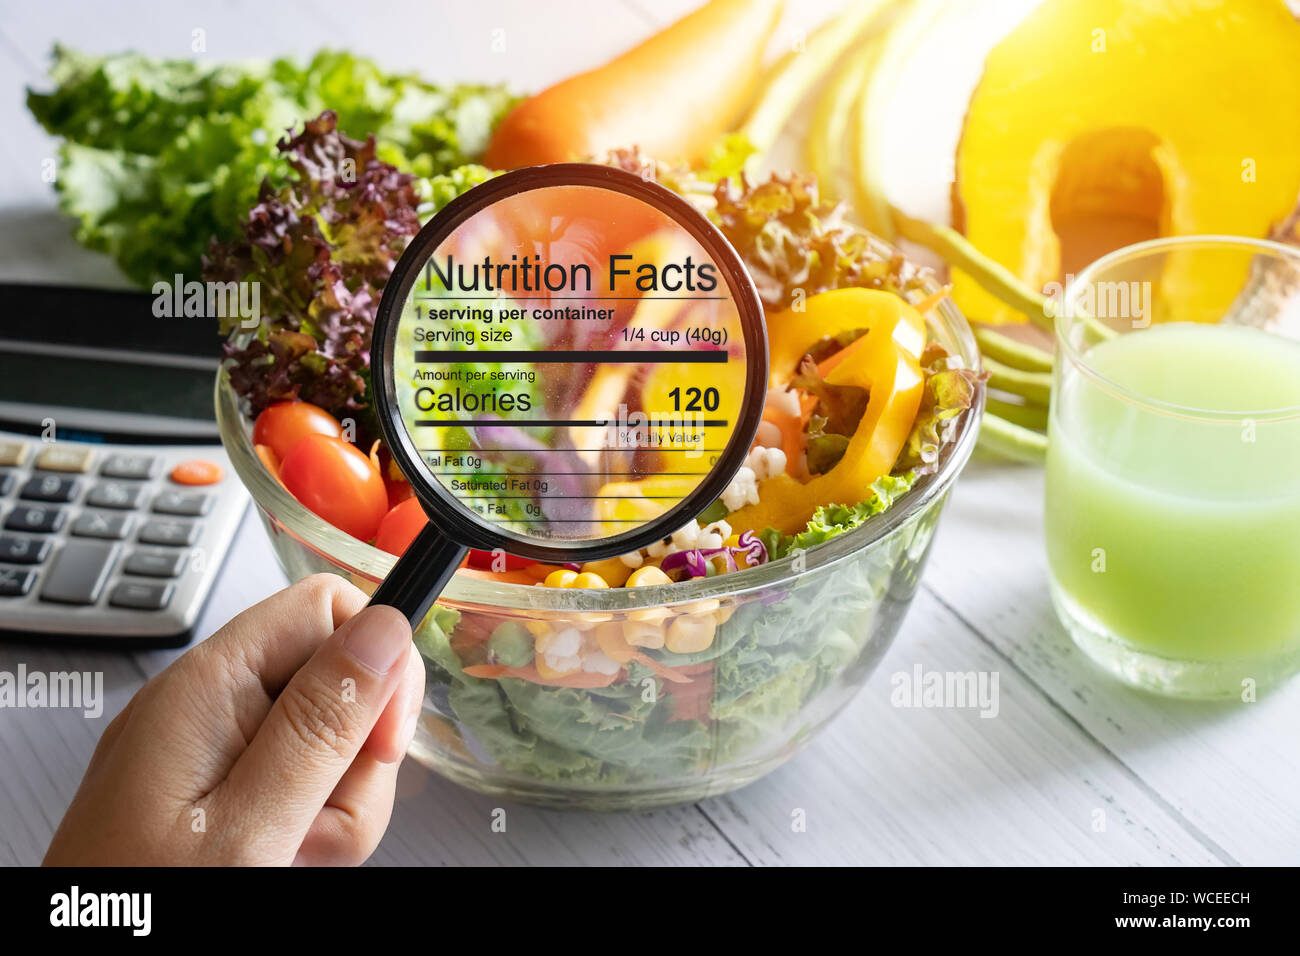 Ernährungswissenschaftliche Informationen Konzept. Hand verwenden Sie die Lupe, um das Bild zu vergrössern, die Einzelheiten der Ernährung Fakten aus der Nahrung zu sehen, Salat Schüssel Stockfoto